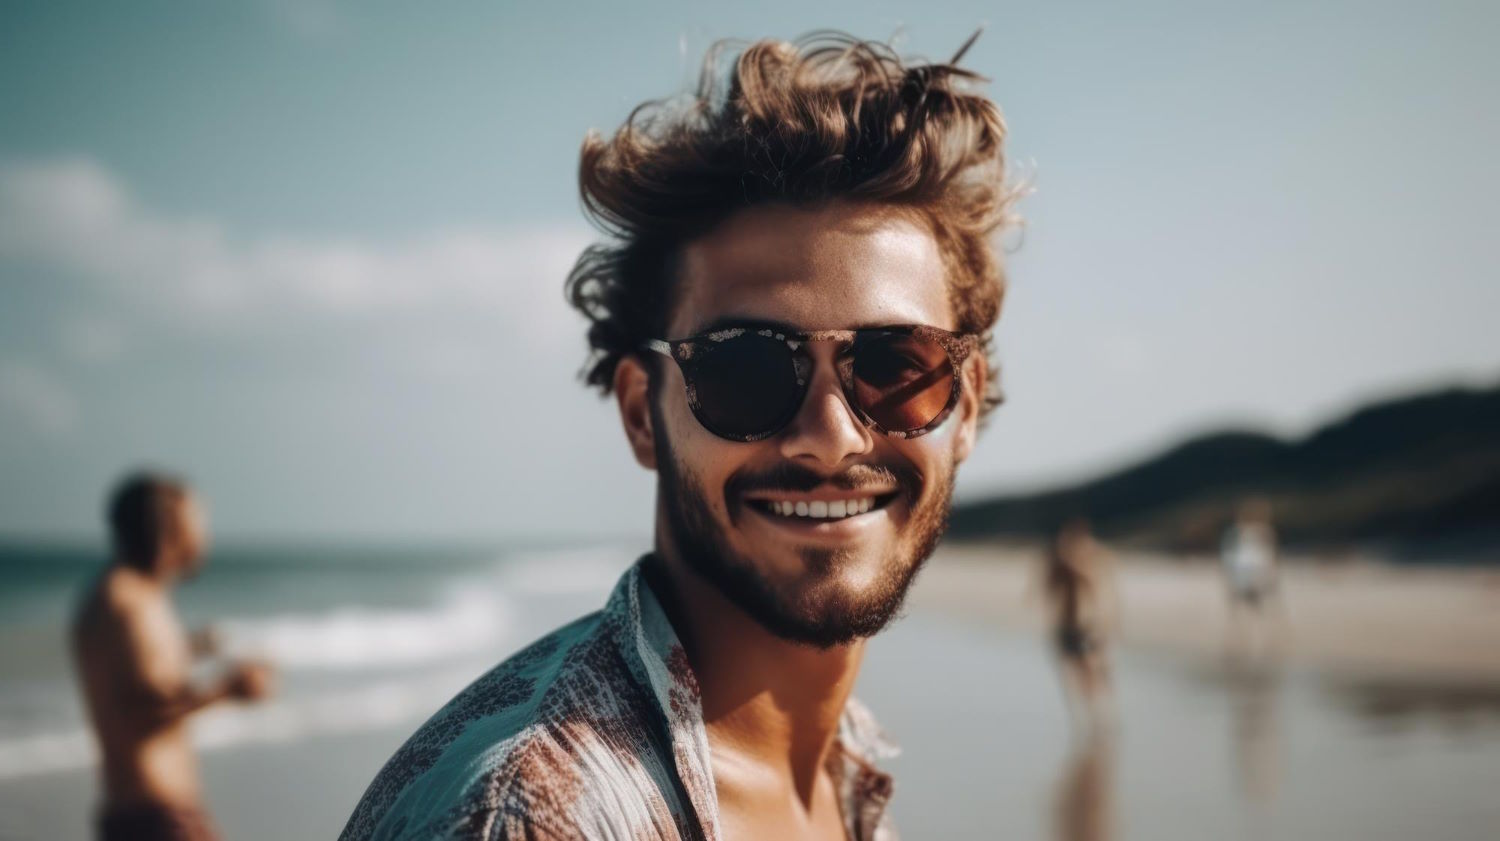 Ray-Ban: Modne i szykowne okulary słoneczne dla nowoczesnego mężczyzny